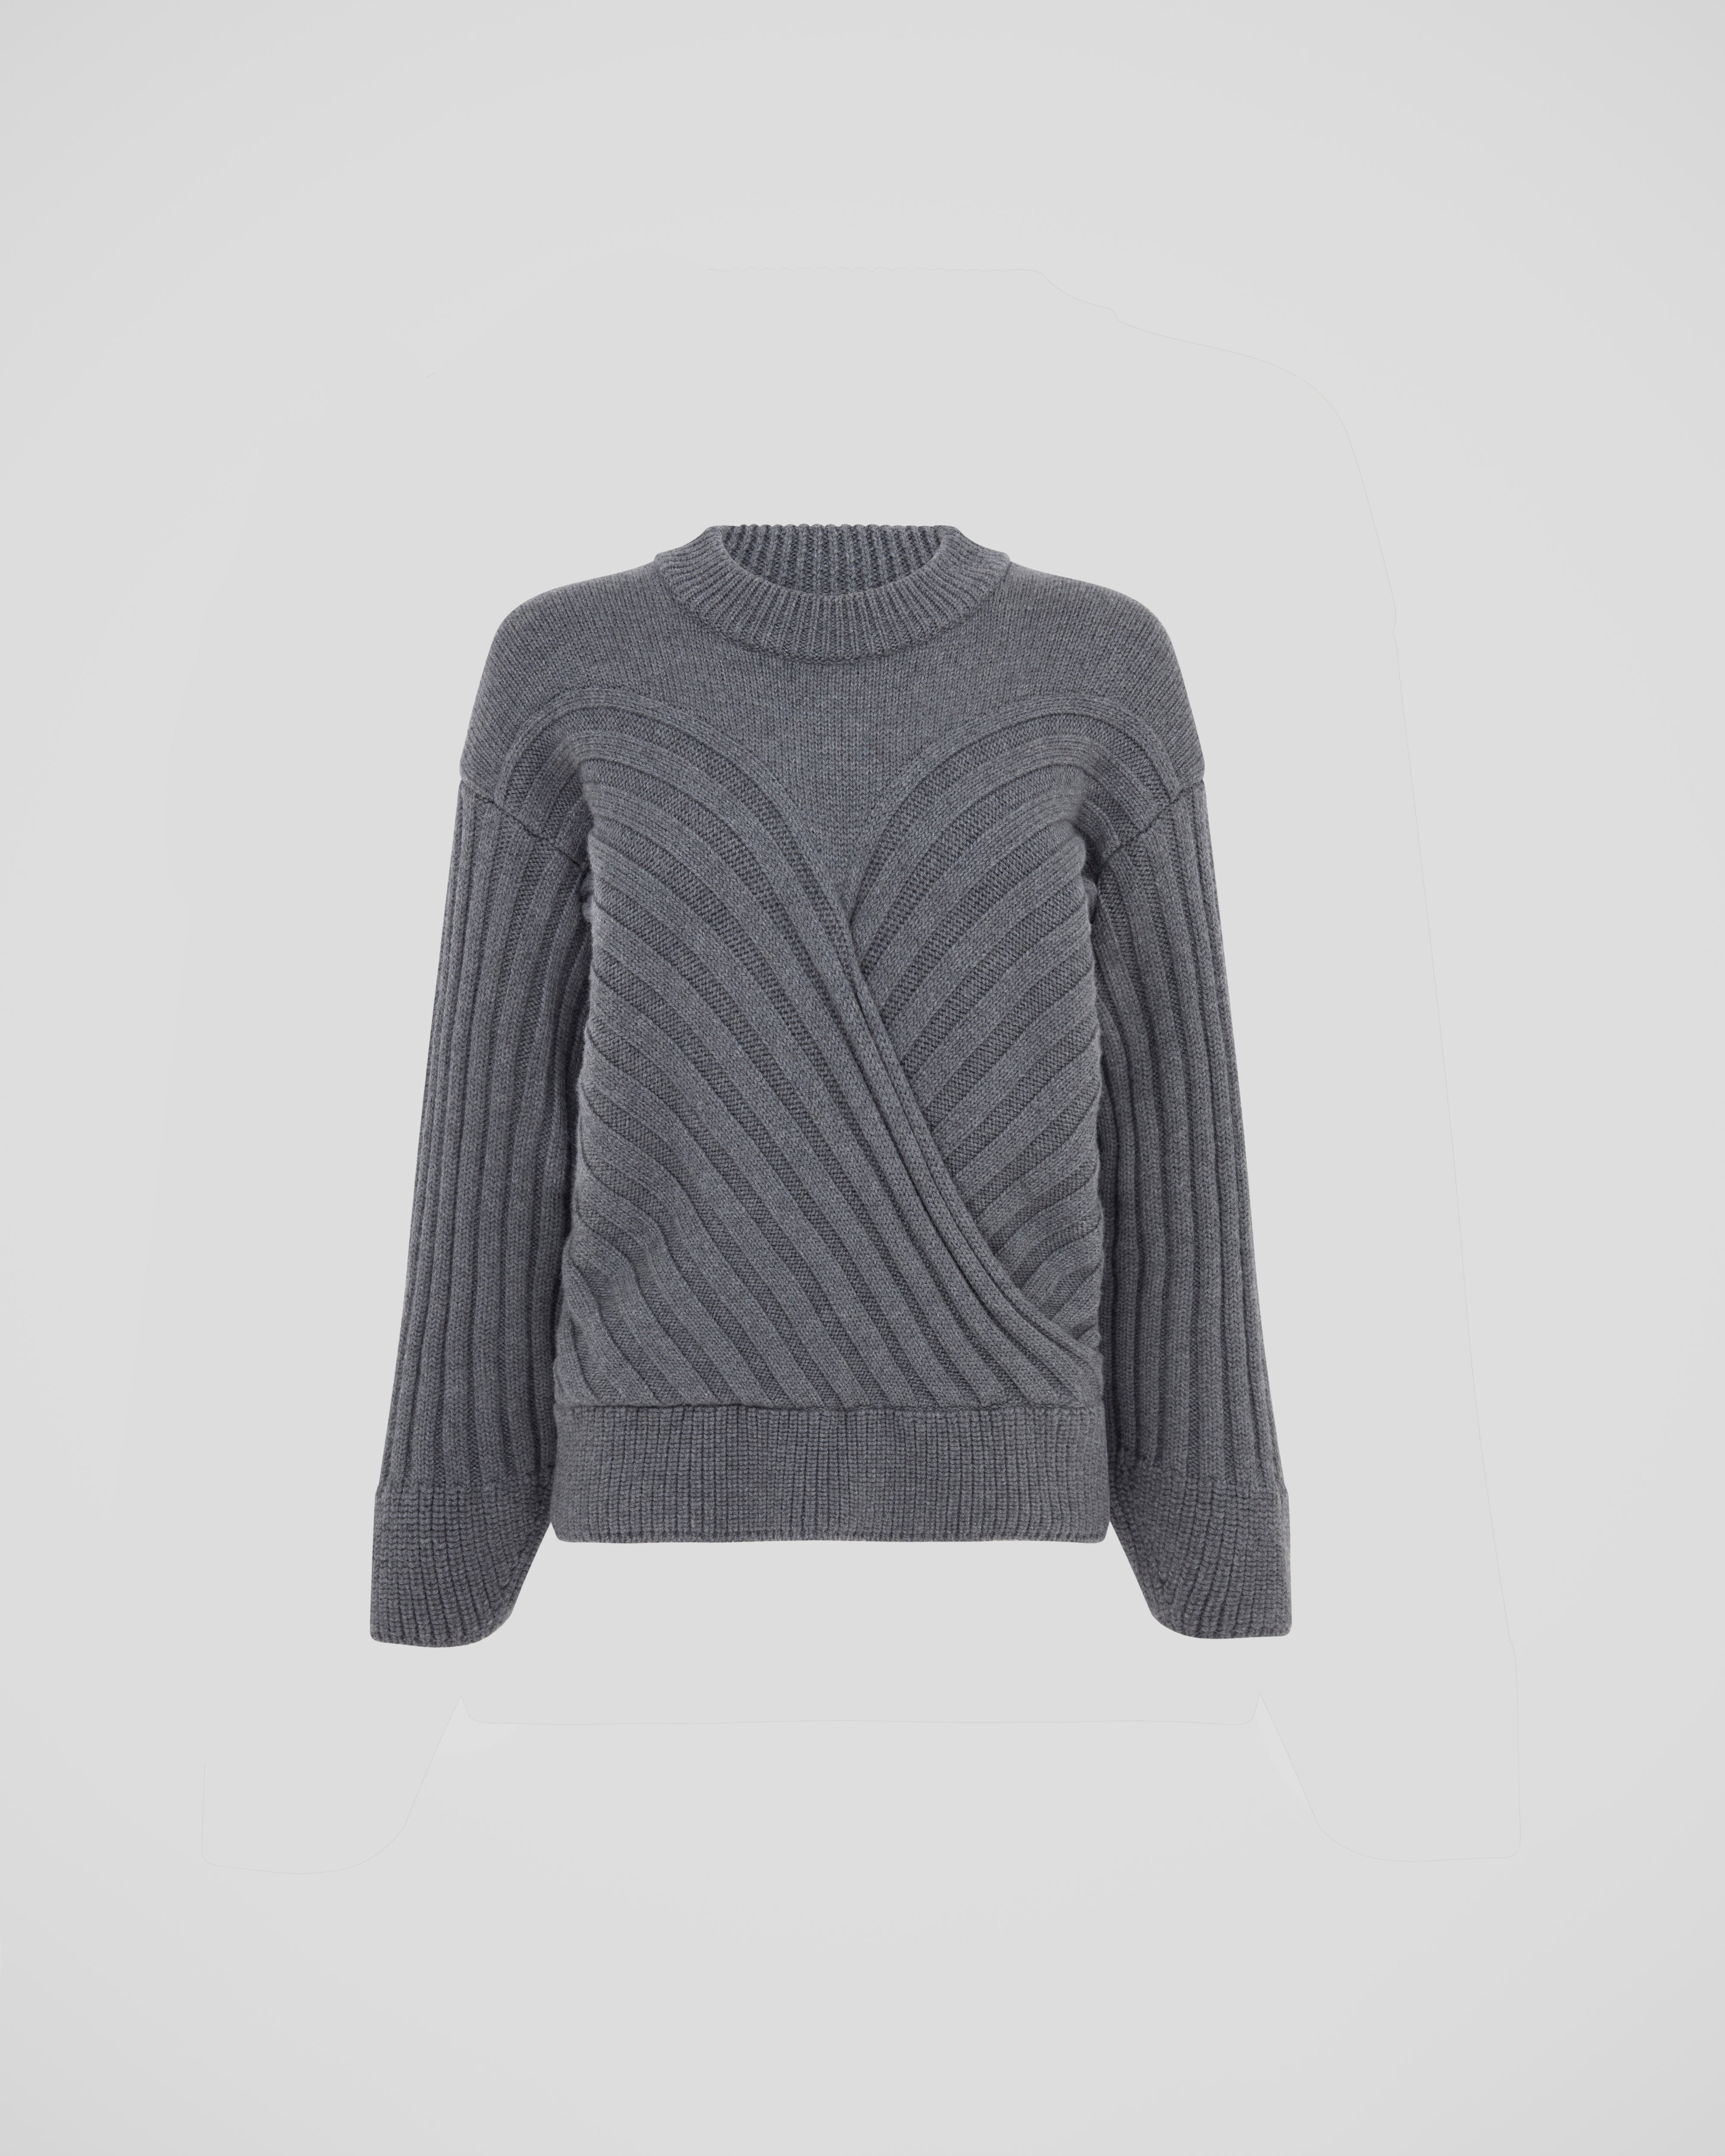 Hilary Radley Ladies' 2fer Sweater - XXL gray